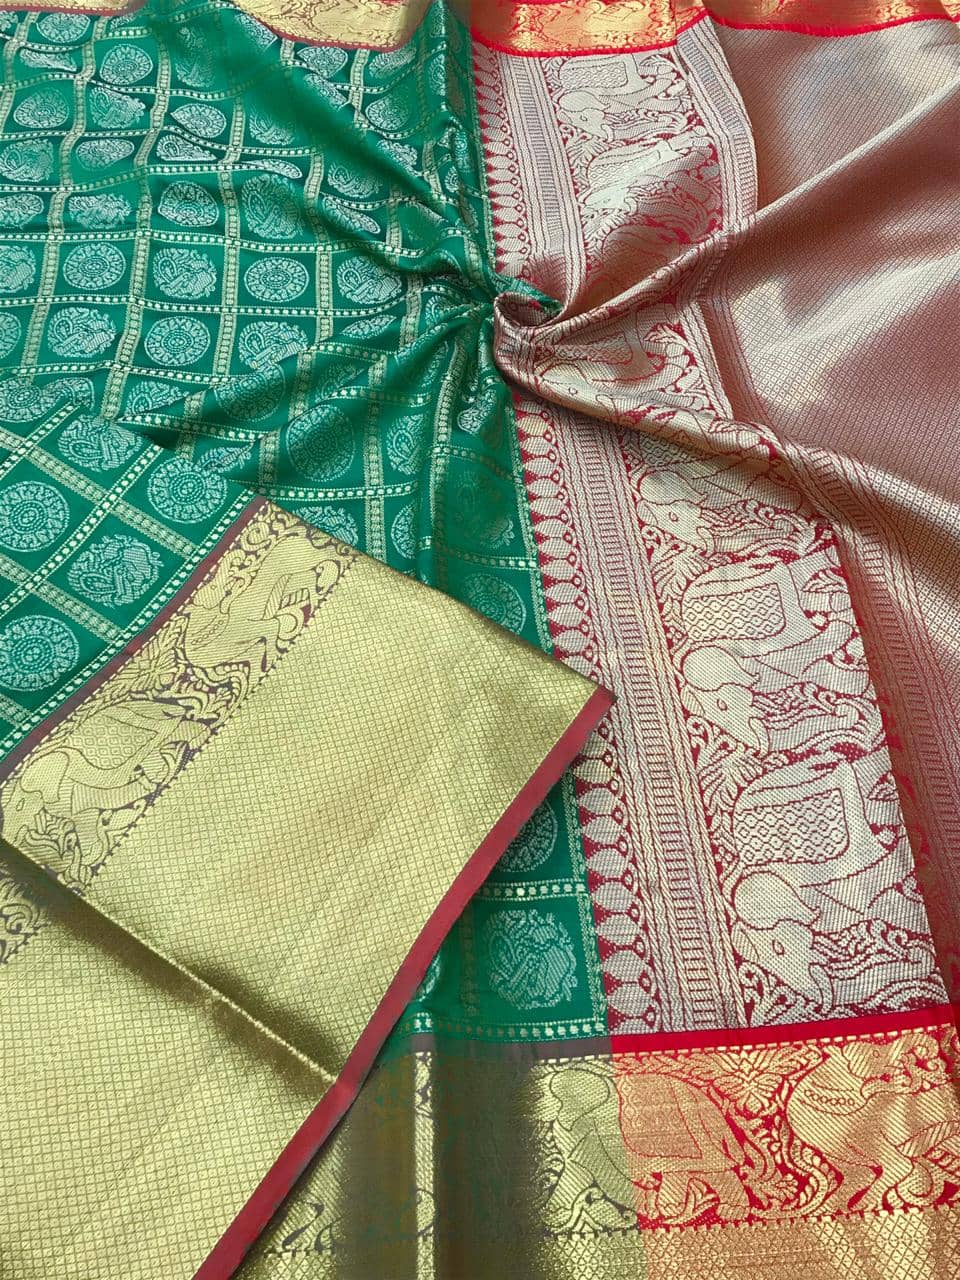 kanchipuram silk saree in Green dvz0001849 - Dvanza.com